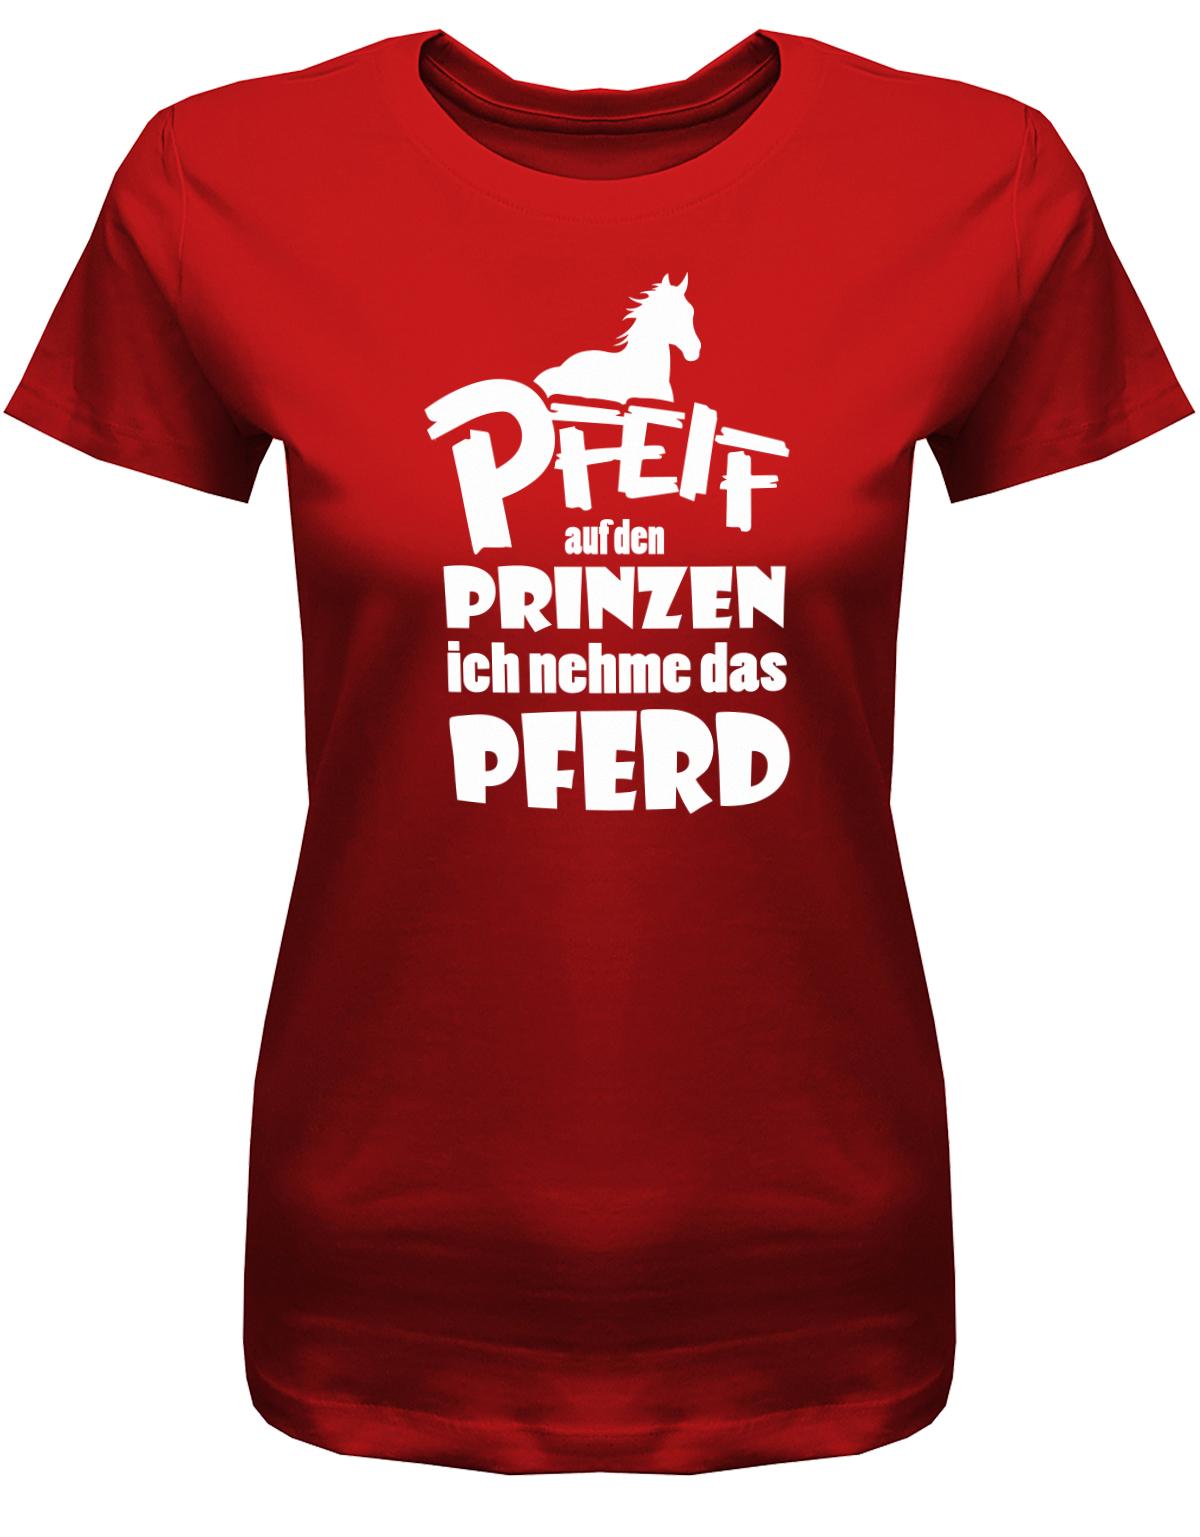 PFeiff-auf-den-Prinzen-ich-nehme-das-Pferd-Damen-Shirt-Rot